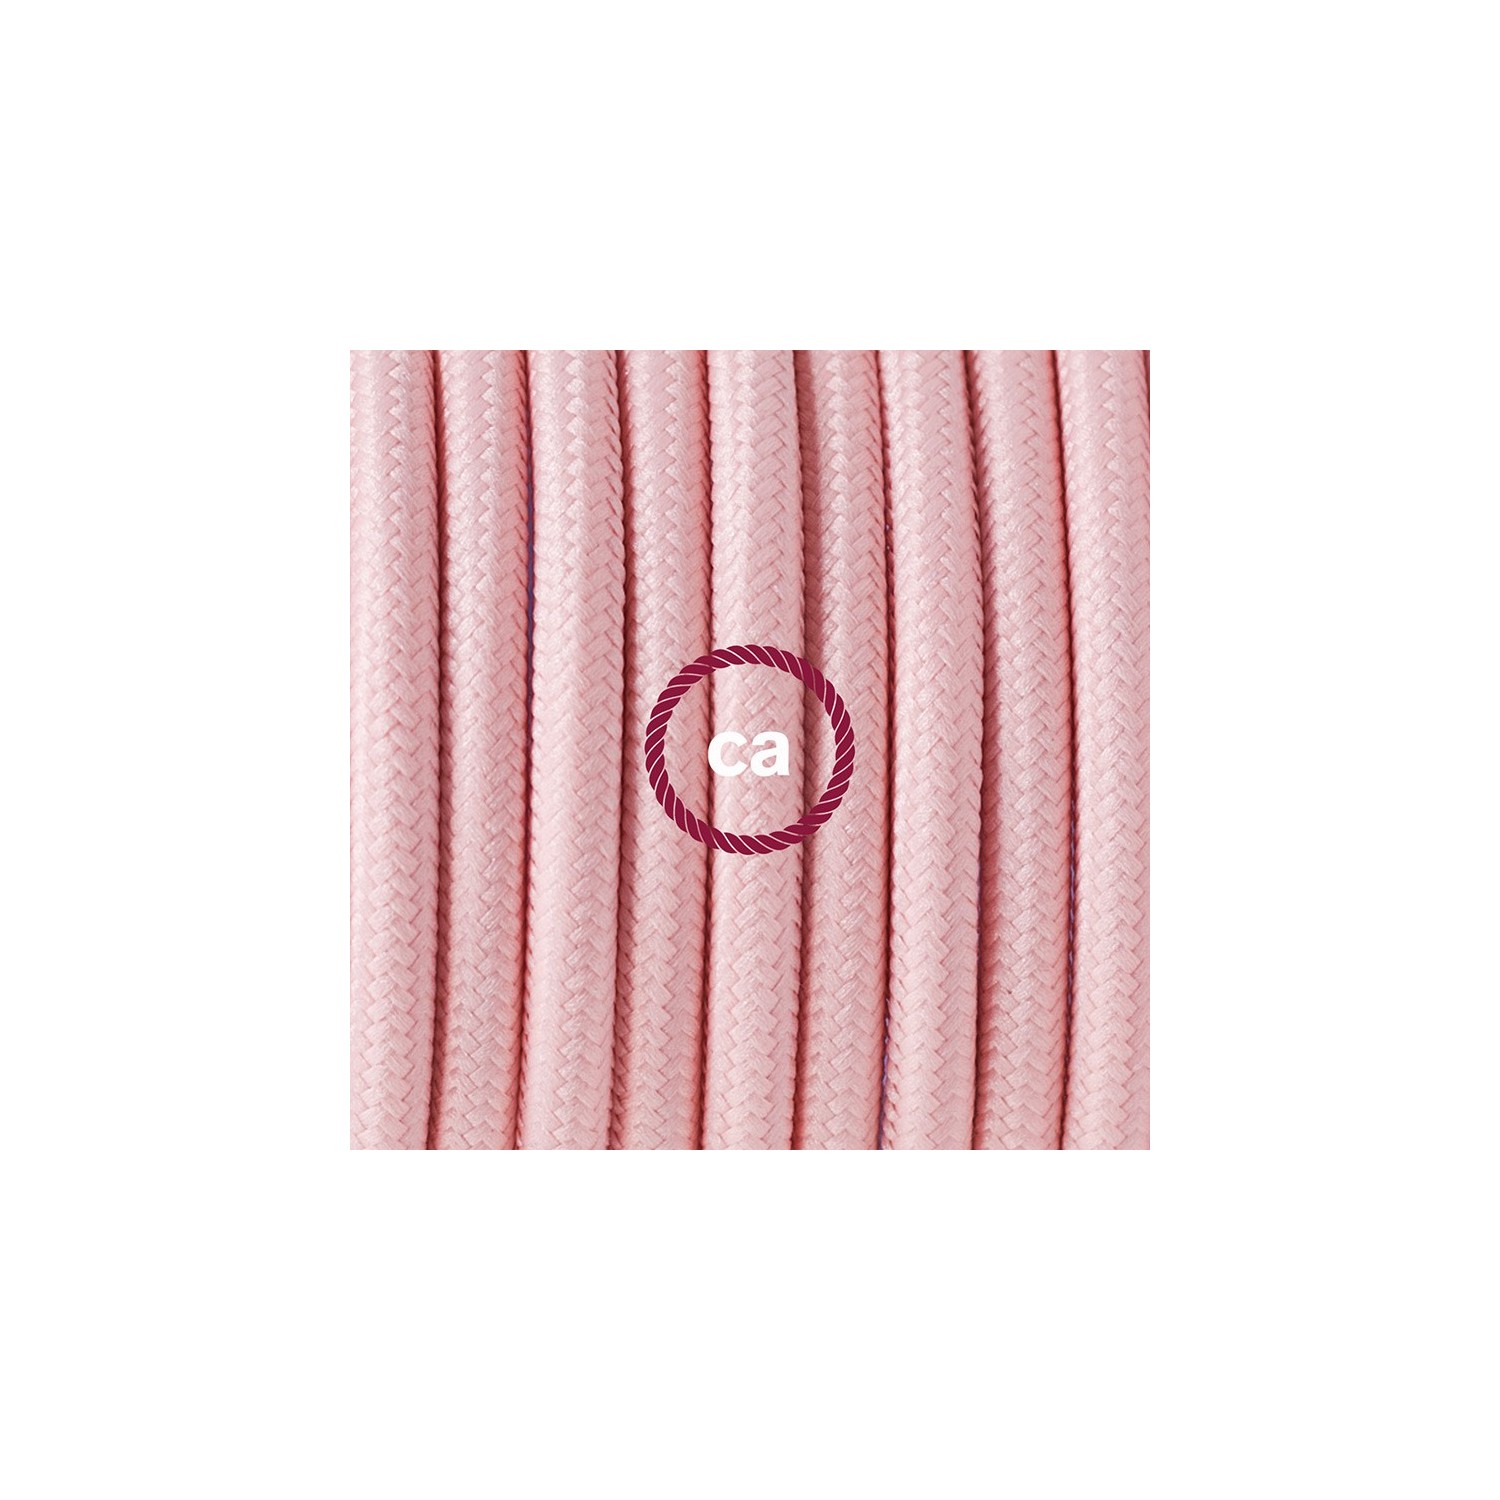 Komplet s podnim prekidačem RM16 Baby Pink rajon - 3 m. Odaberite boju prekidača i utikača!